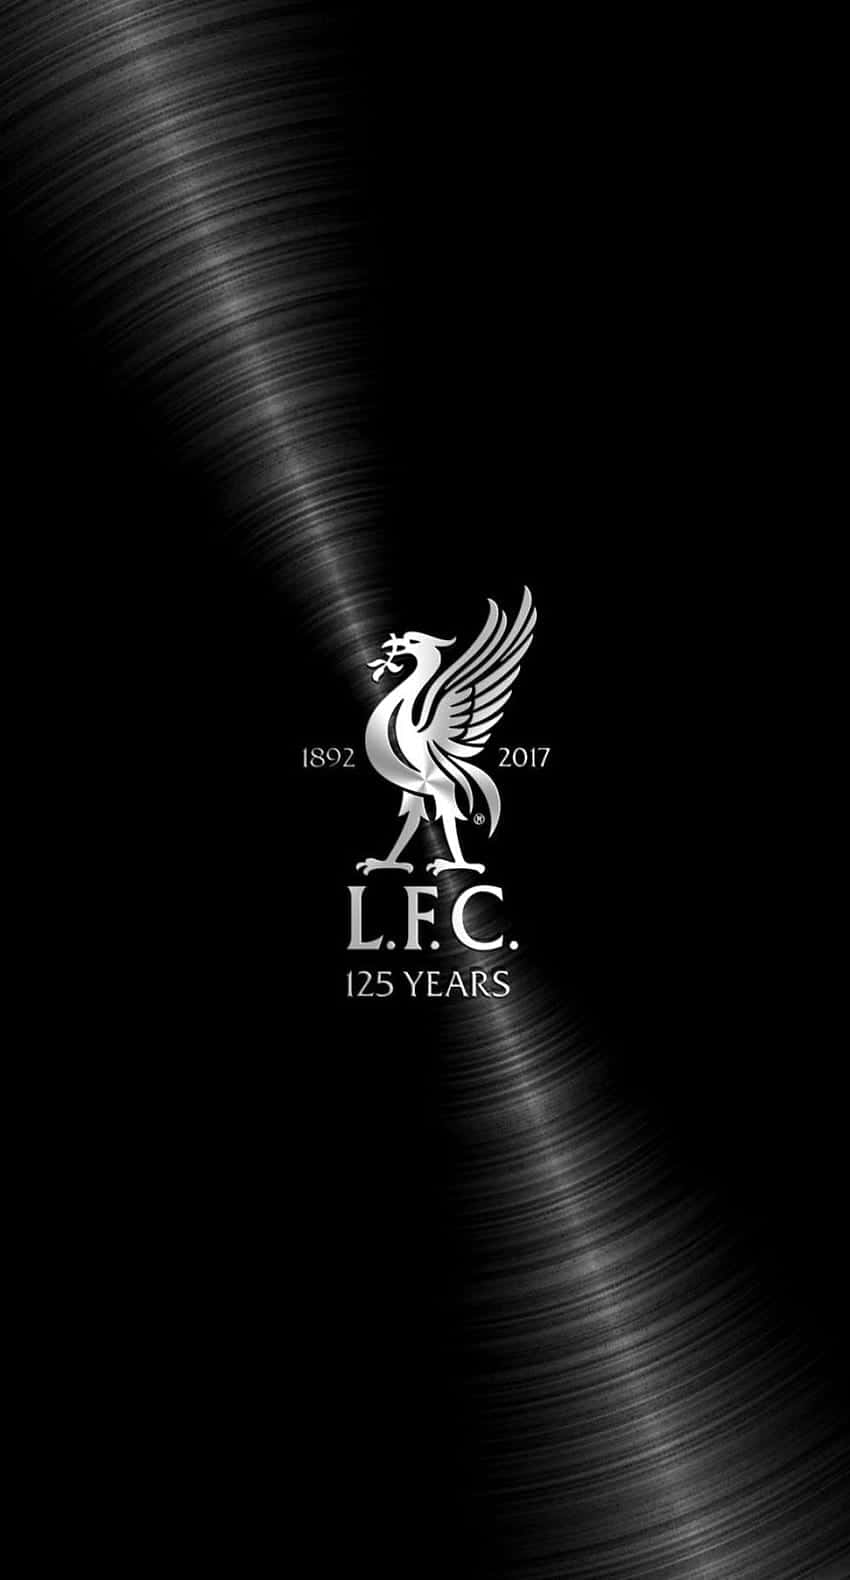 Liverpoolsfc-logotyp På En Svart Bakgrund. Wallpaper